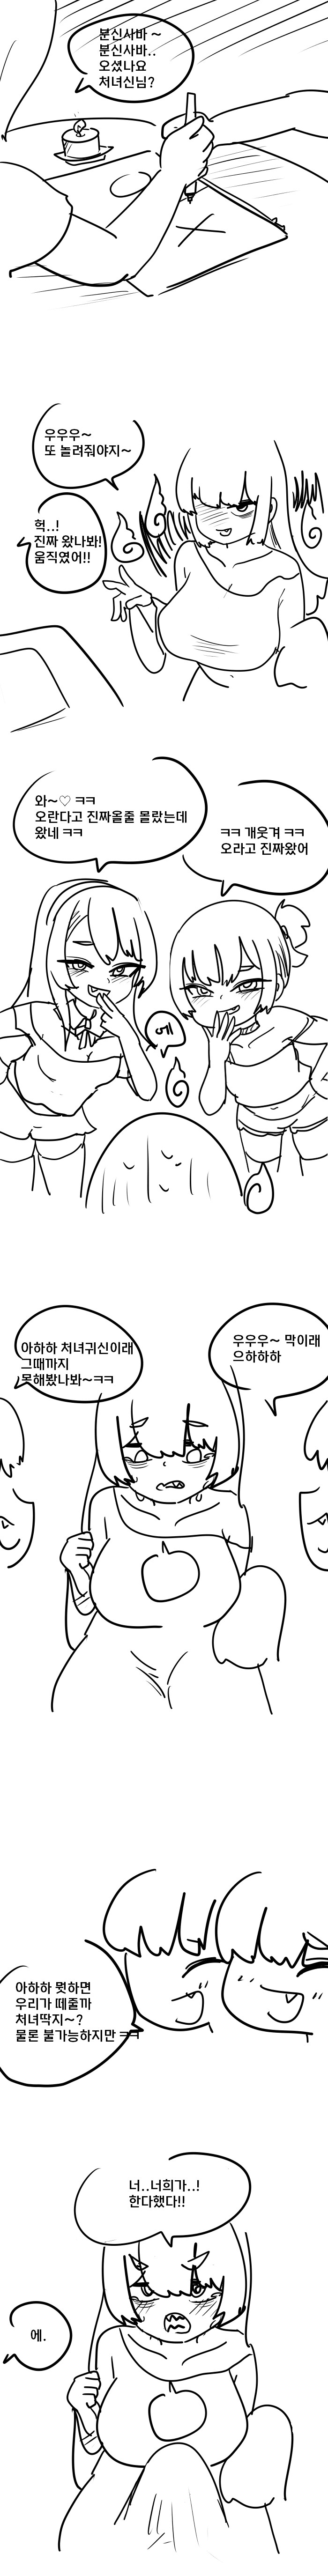 분신사바로 처녀귀신 소환하는 만화. manhwa